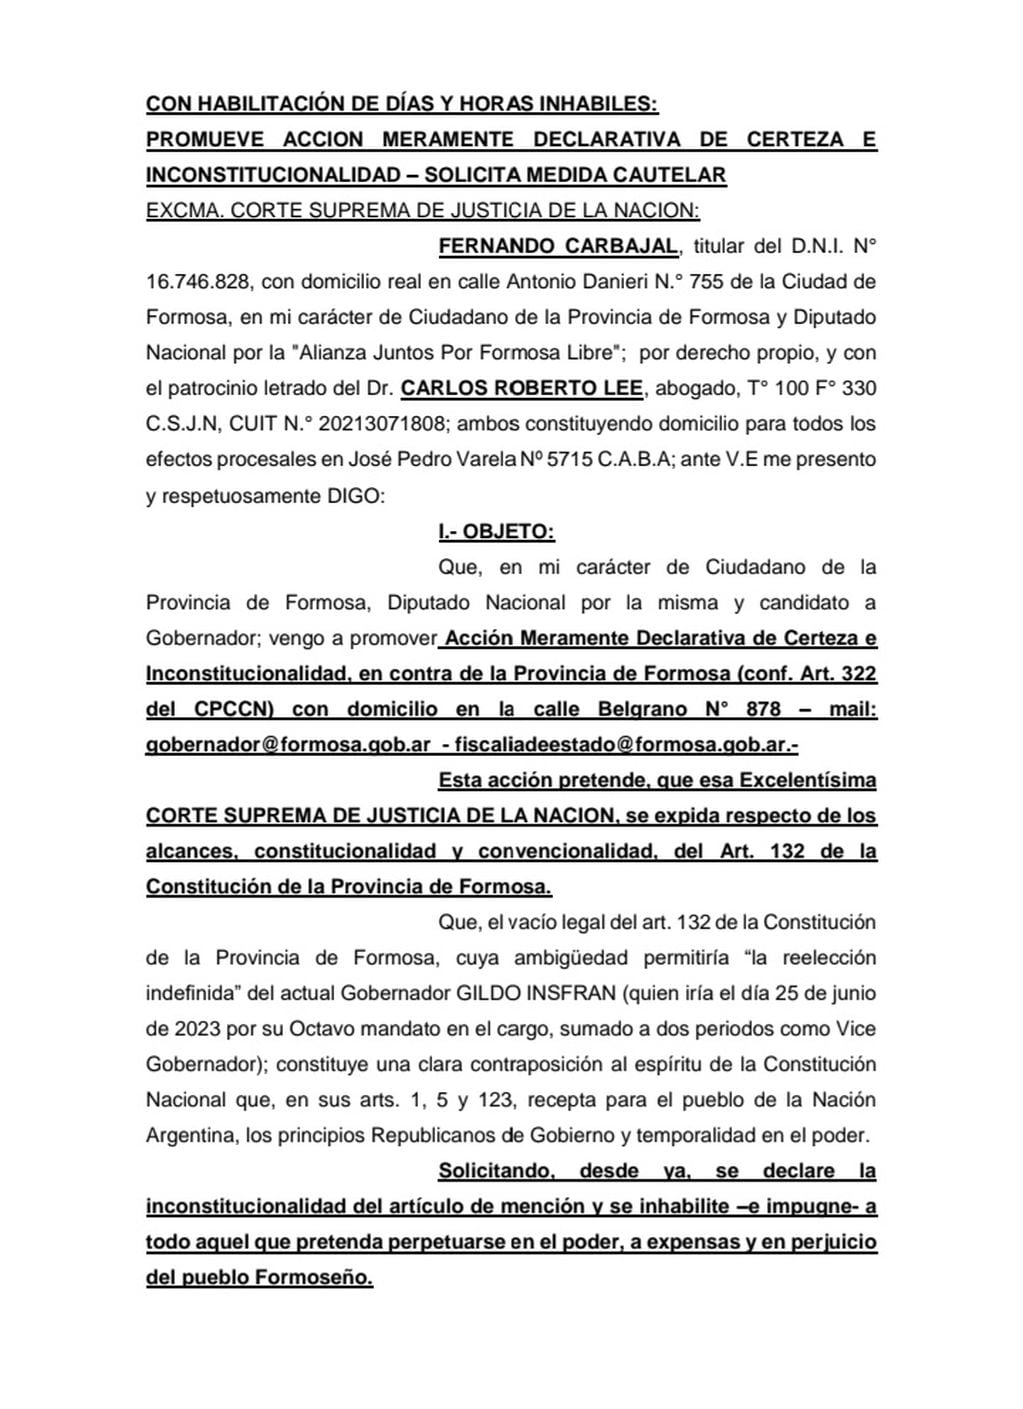 La impugnación que presentó Fernando Carbajal contra Gildo Insfrán en mayo del 2023.